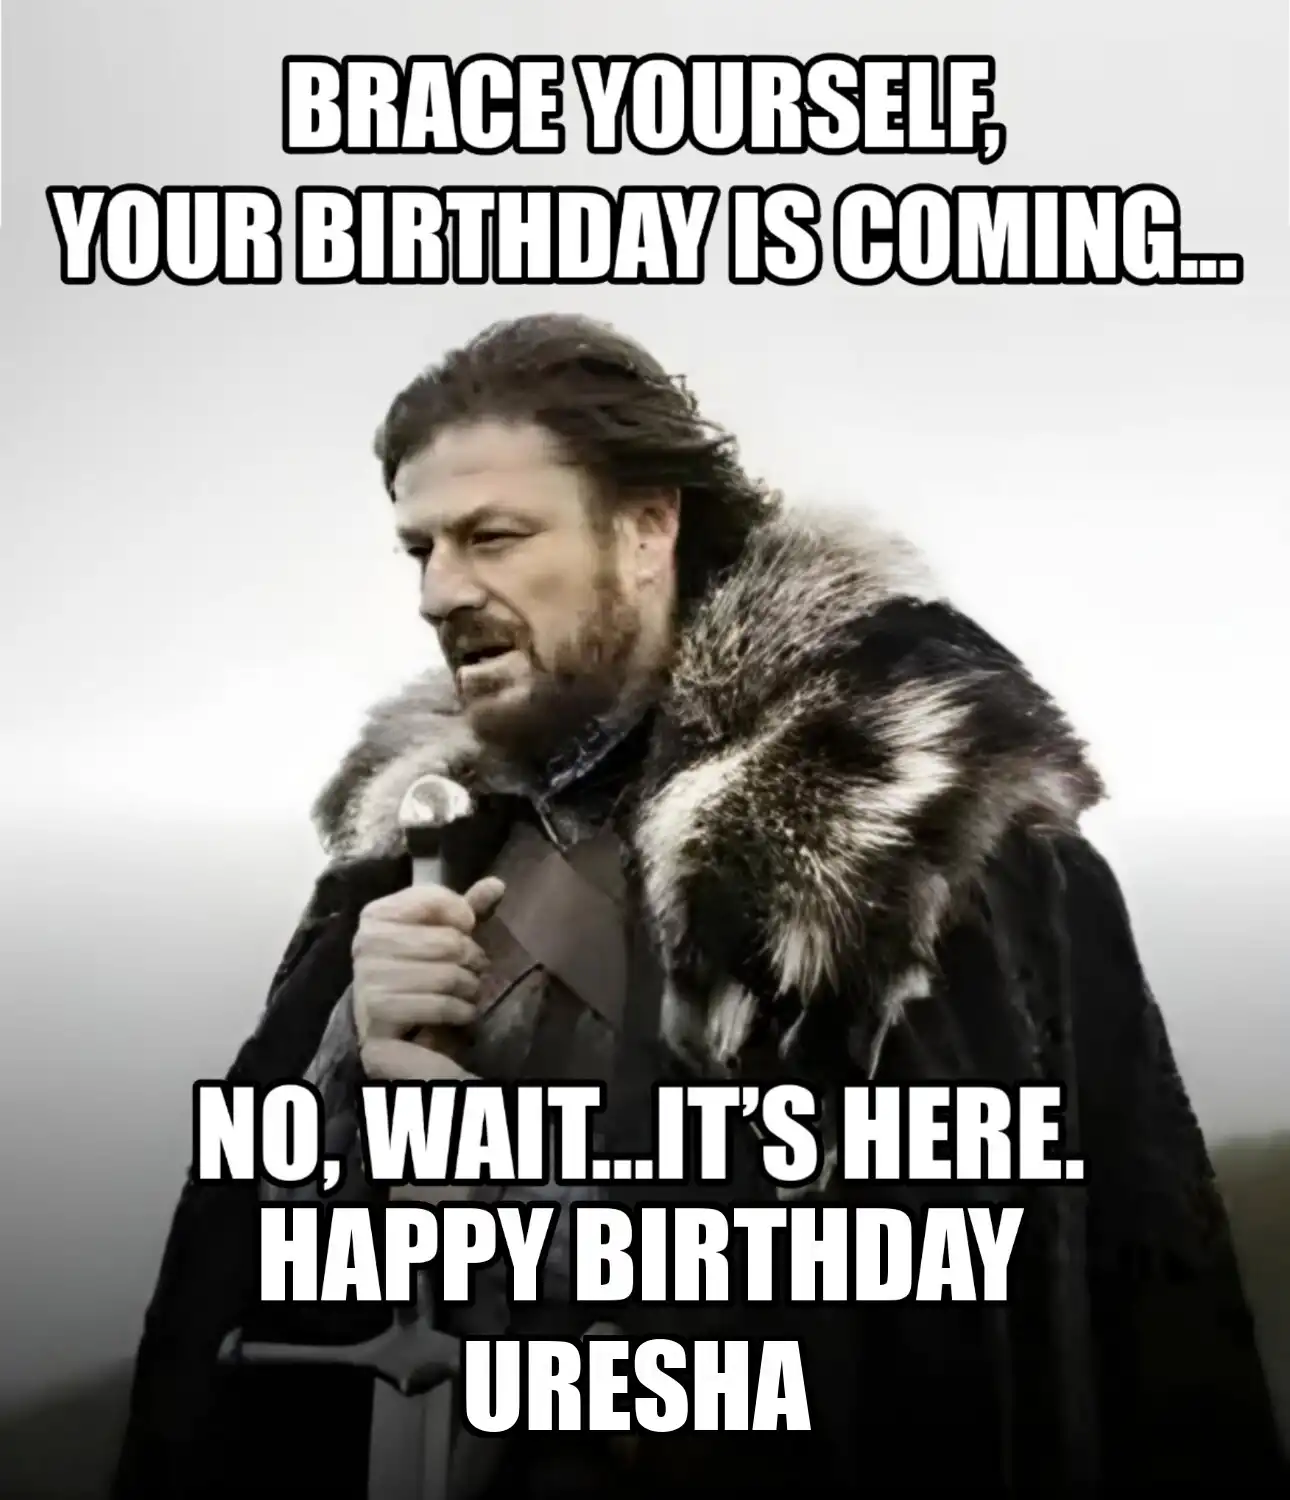 Happy Birthday Uresha Brace Yourself Your Birthday Is Coming Meme